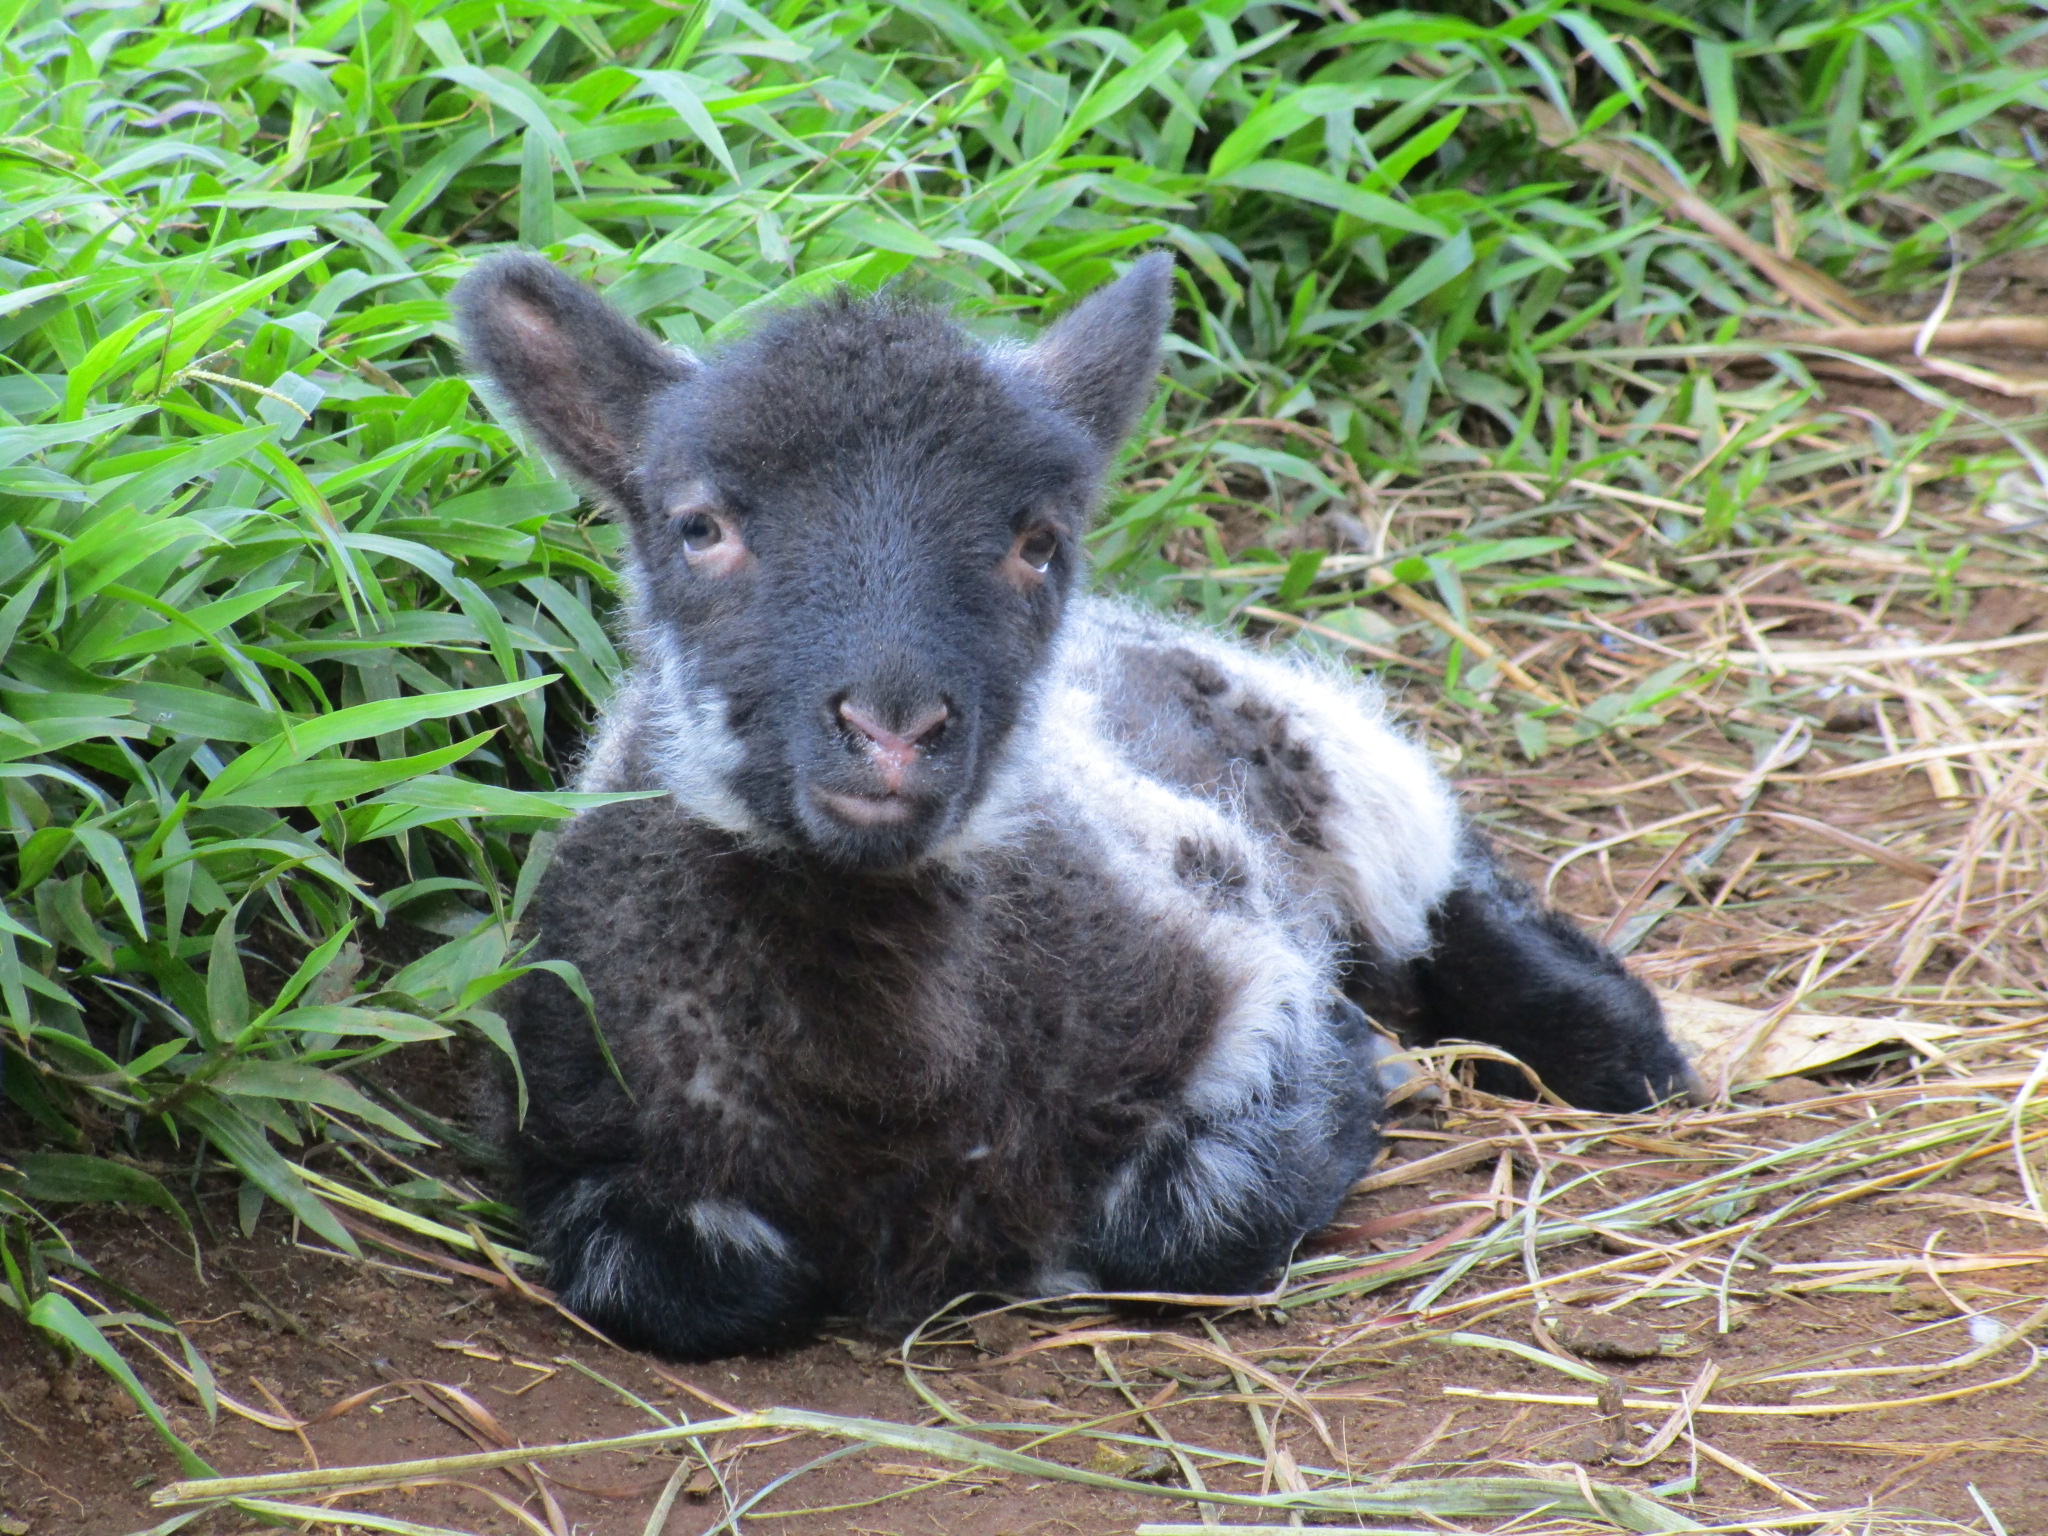 Ewe lamb at 3 days old